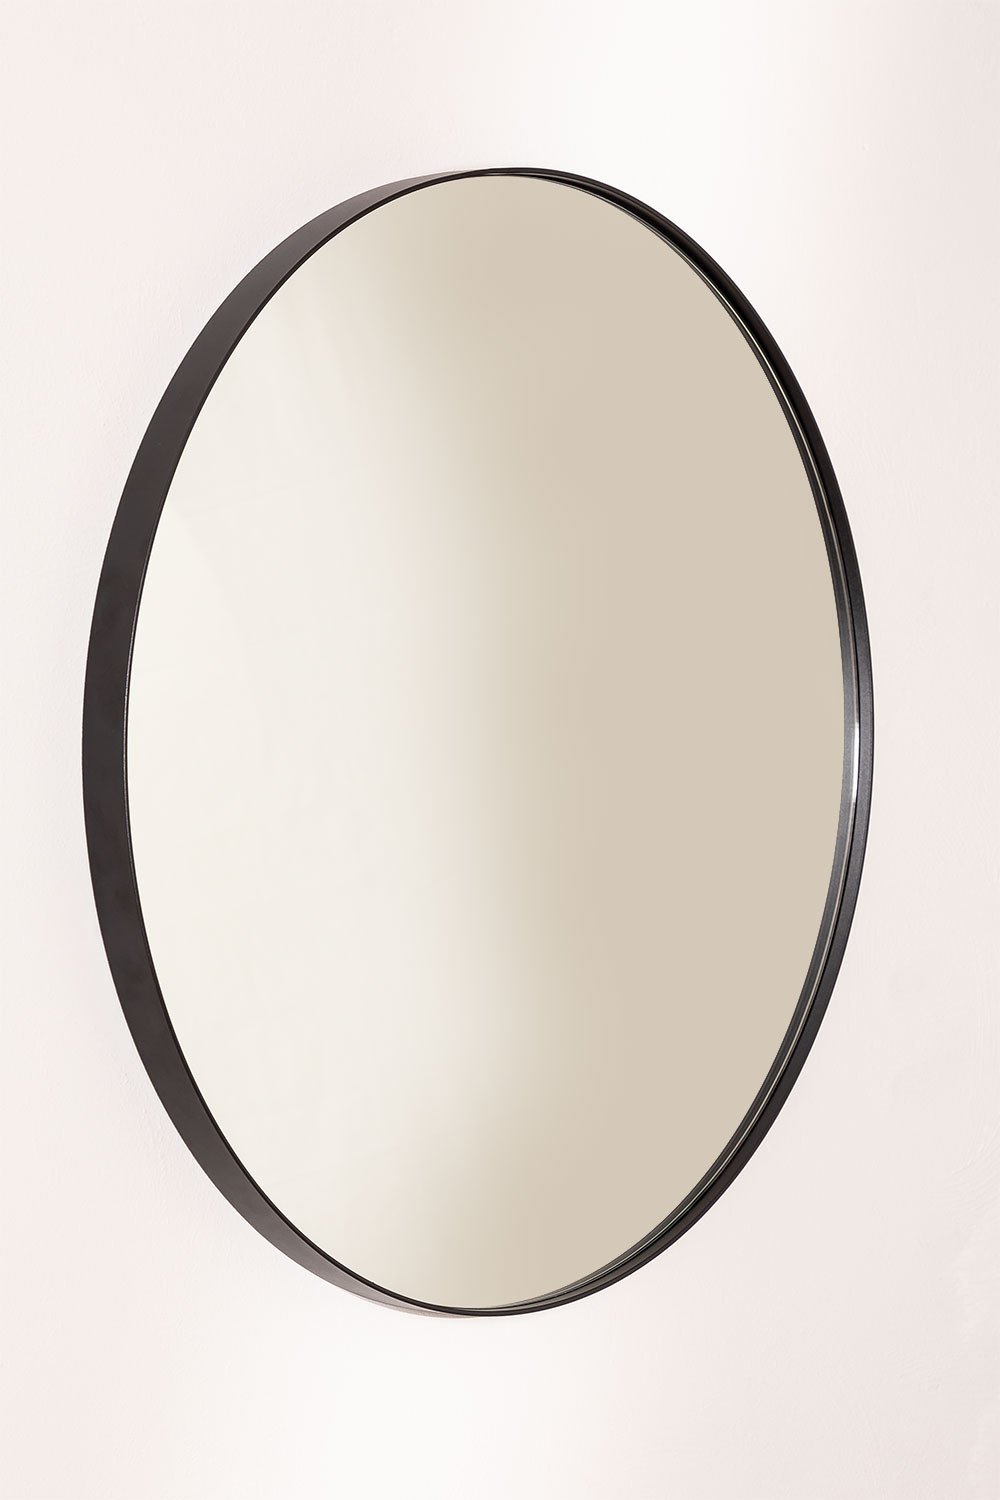 Okragle metalowe lustro scienne (Ø60,5 cm) Gon, obrazek w galerii 2